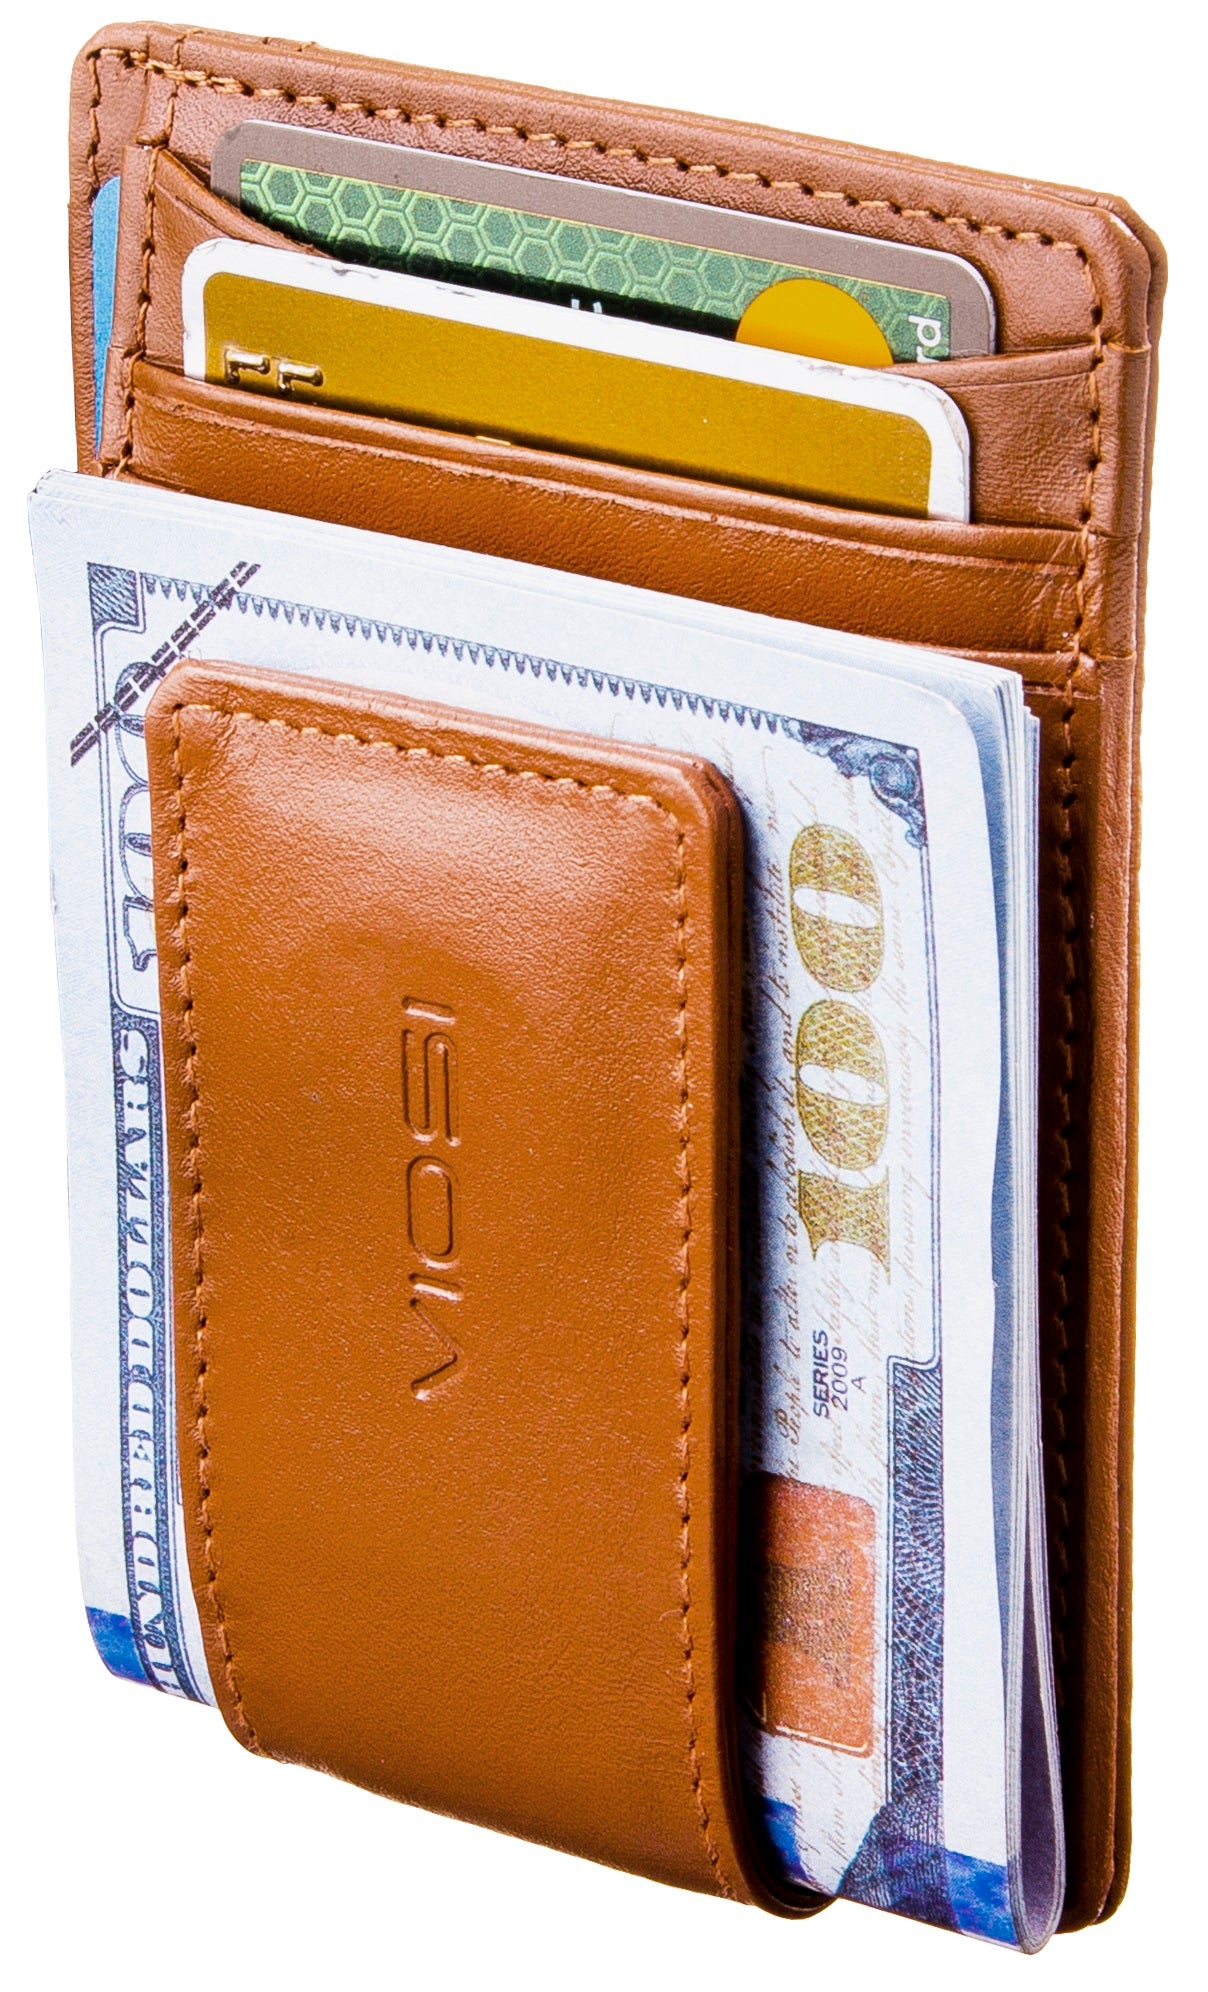 Men's Wallet w/ Money Clip - RIONI ®